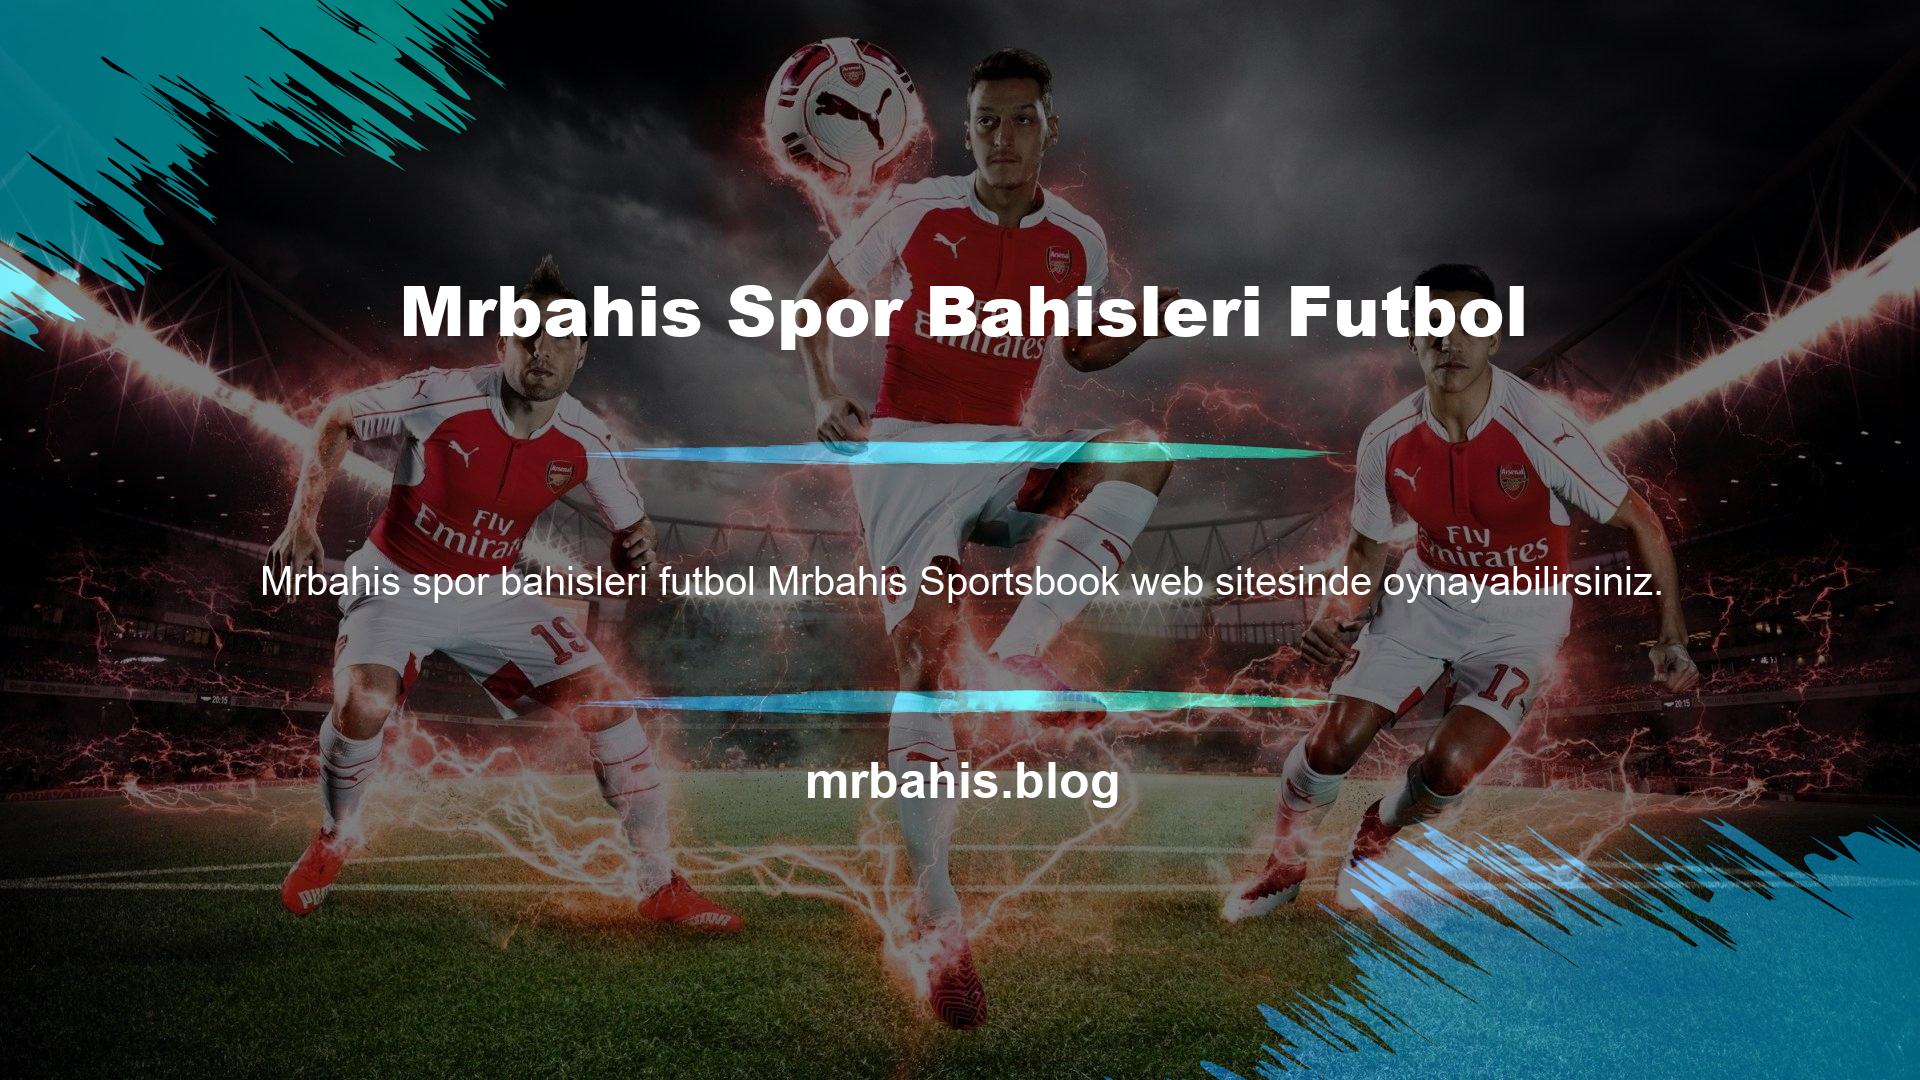 Spor Bahisleri Türkiye Mrbahis spor bahisleri futbol ligleriyle sınırlı değildir